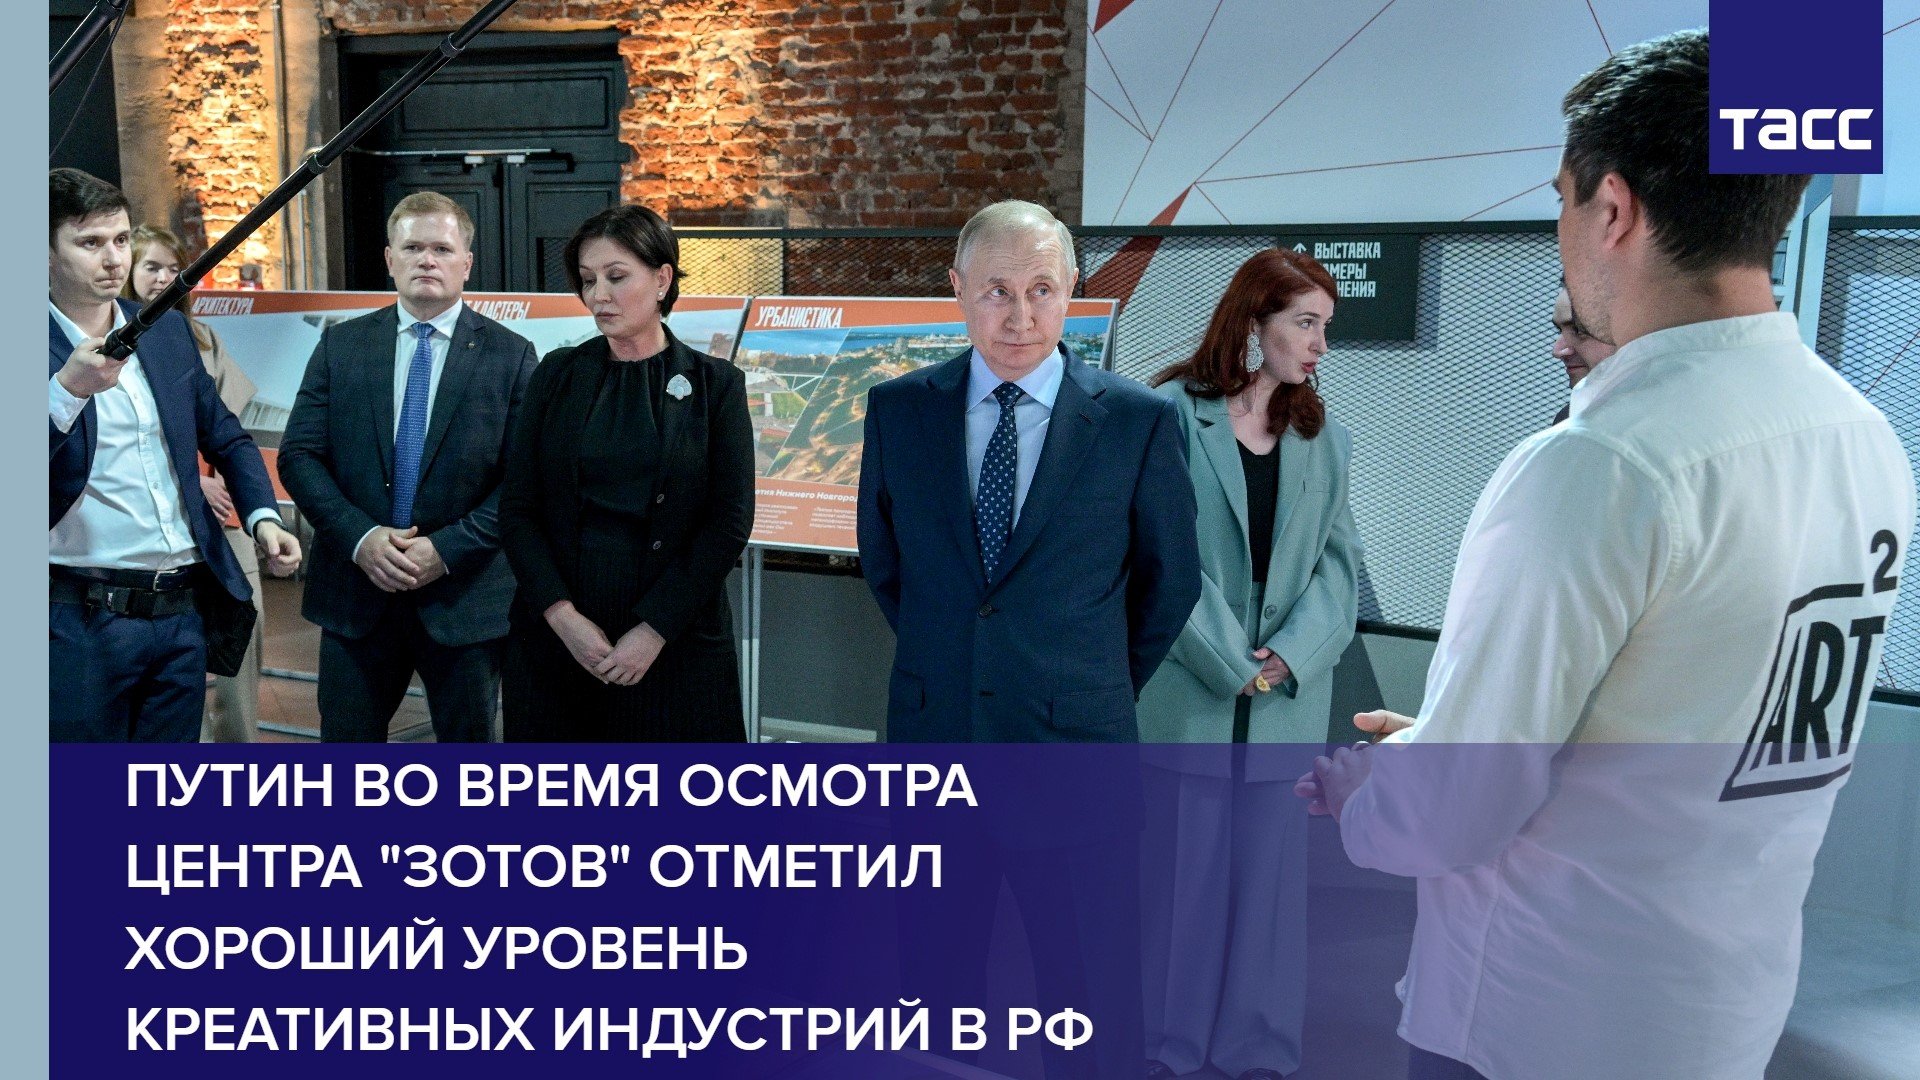 Путин во время осмотра центра "Зотов" отметил хороший уровень креативных индустрий в РФ #shorts